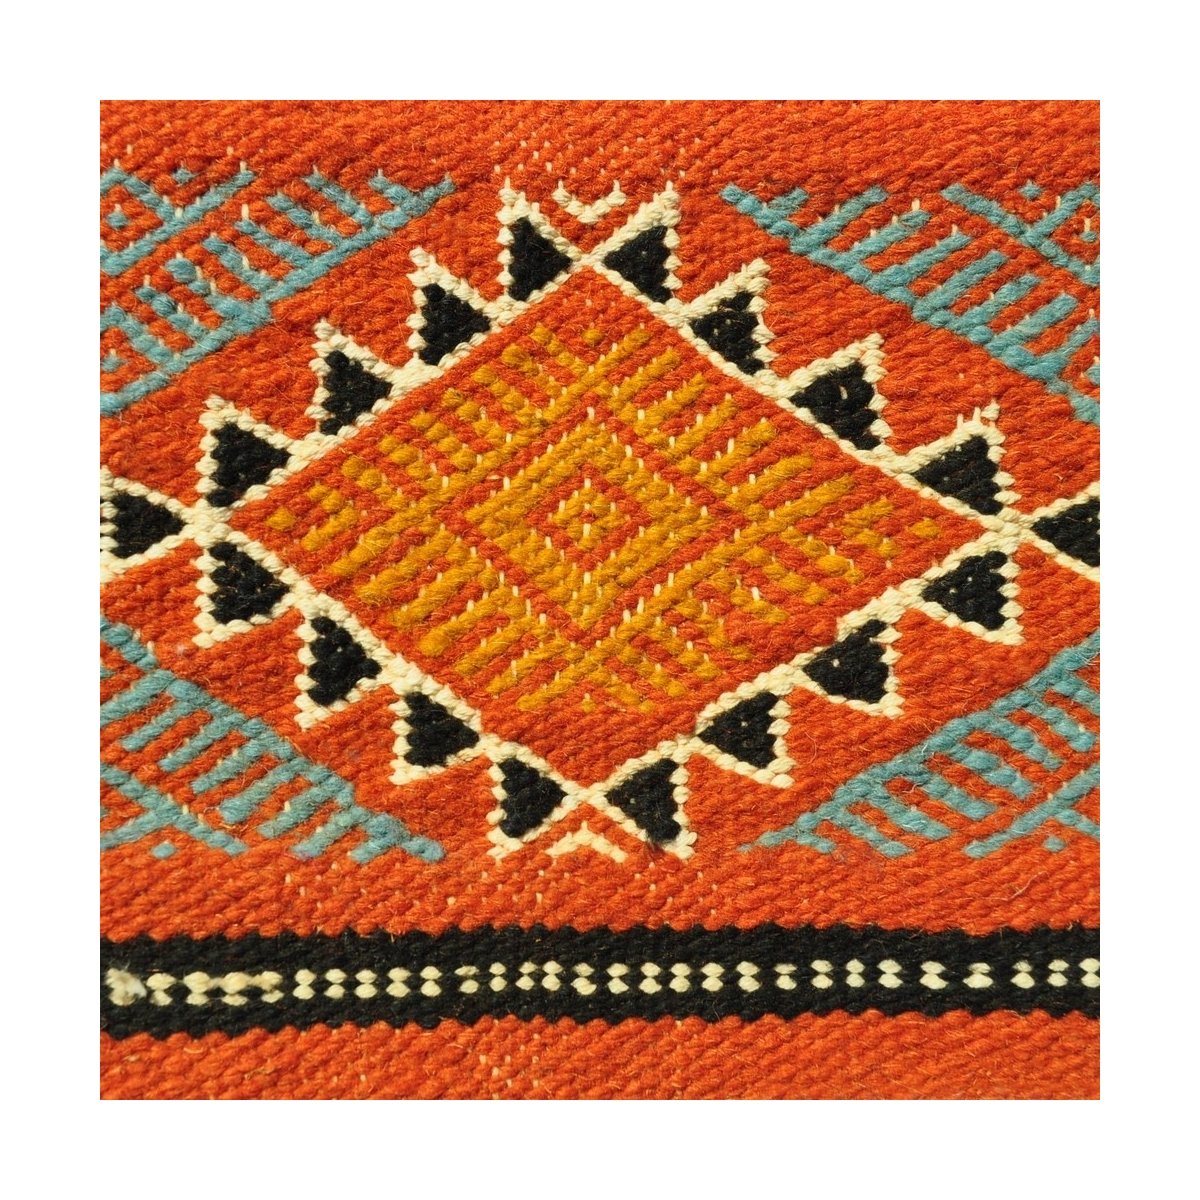 Tapete berbere Tapete Kilim Sayada 67x100 Multicor (Tecidos à mão, Lã, Tunísia) Tapete tunisiano kilim, estilo marroquino. Tapet